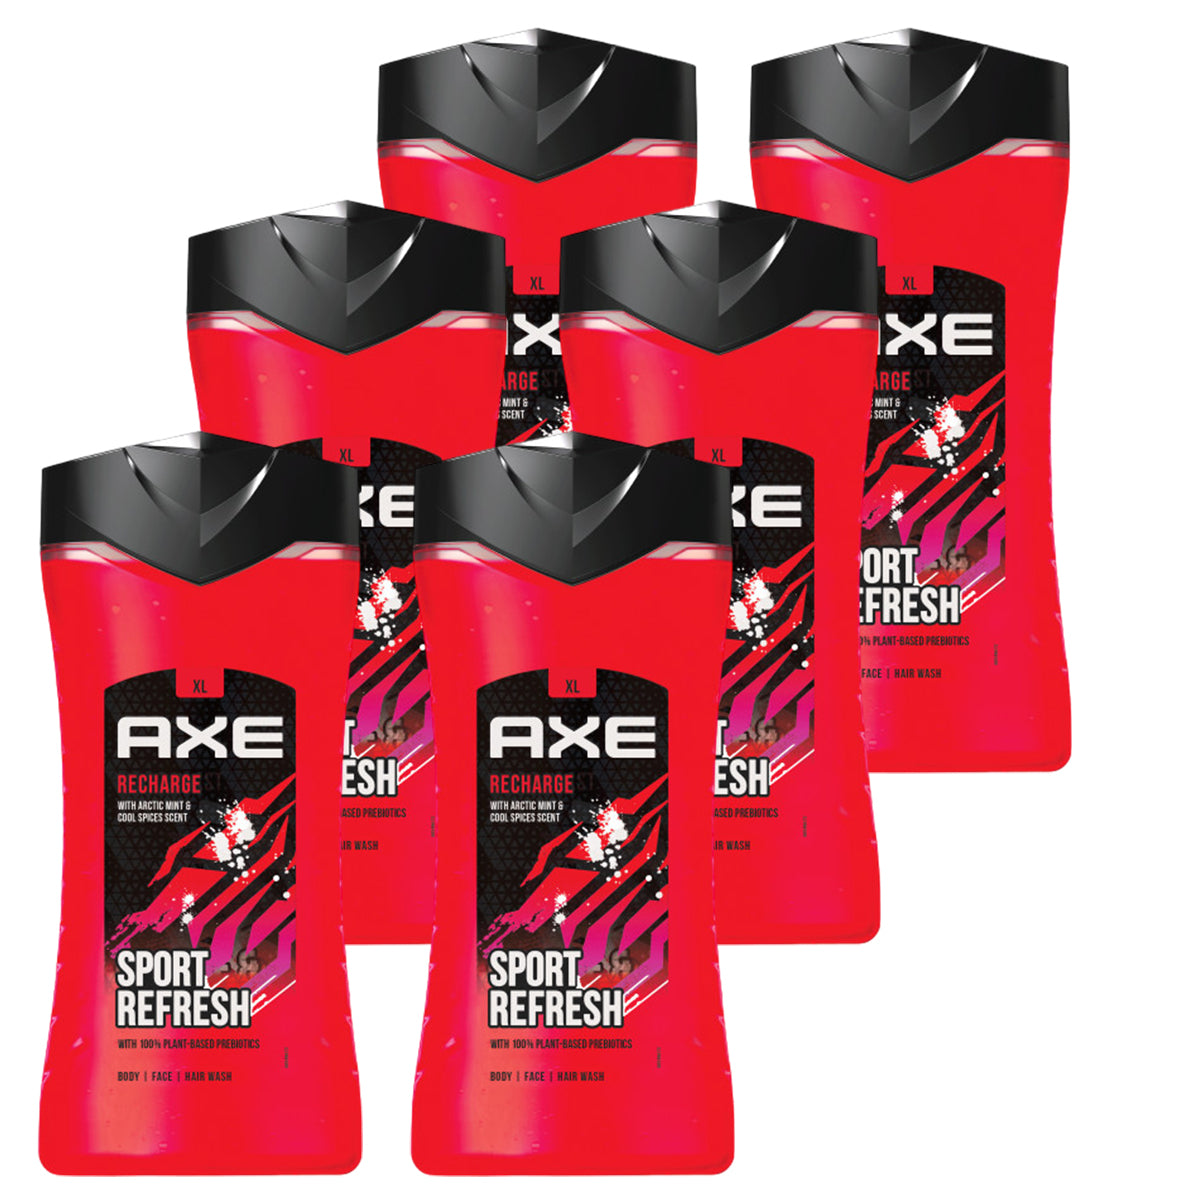 Axe - 3-in-1 Douchegel, Facewash & Shampoo Mannen -  Recharge Sport Refresh – 12 uur Lange Onweerstaanbare Frisse Geur van Artic Mint en Cool Spice -  Voordeelverpakking 6 x 400 ml